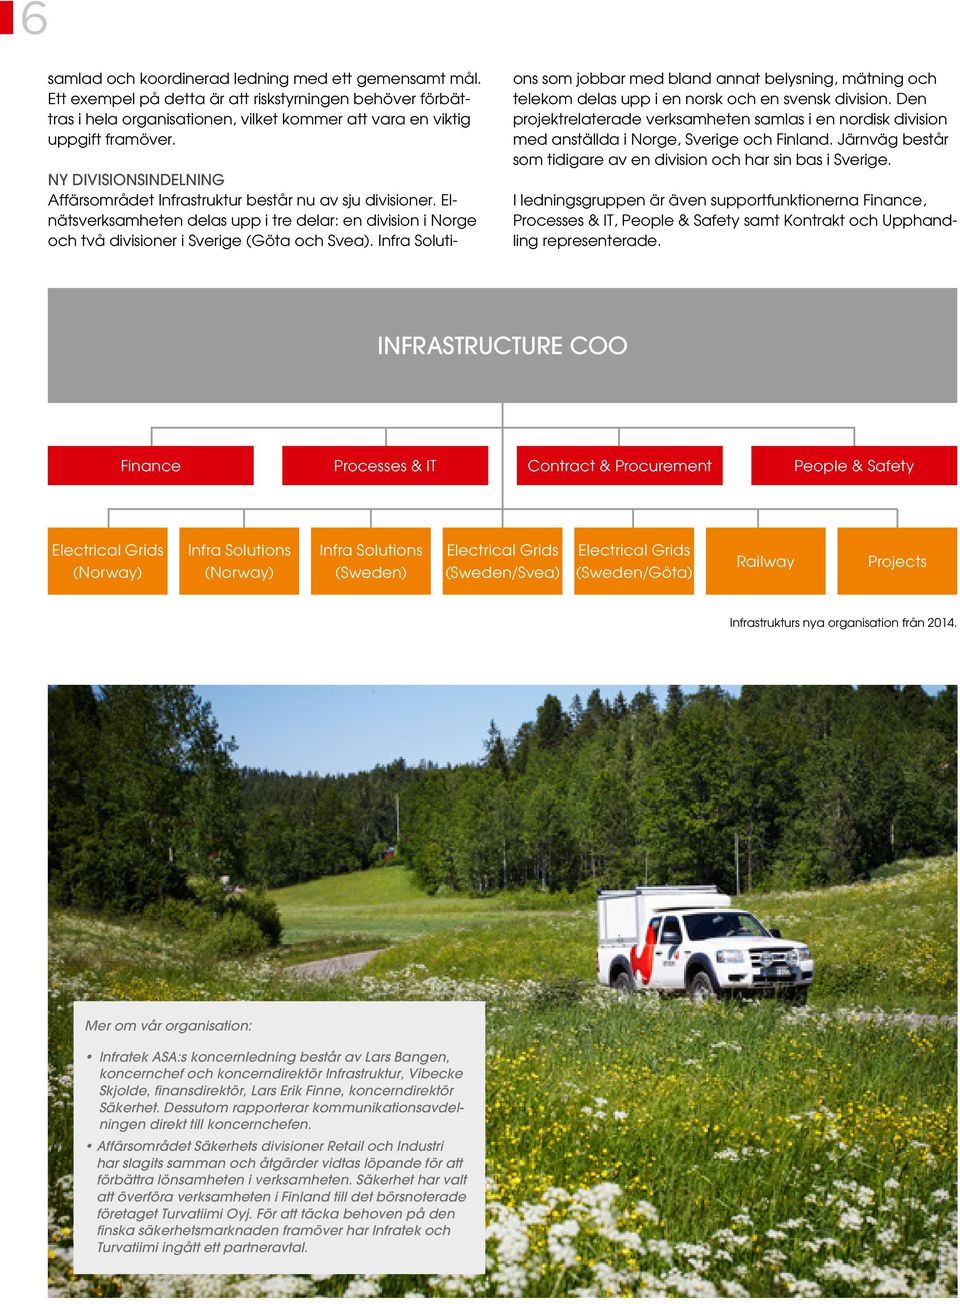 Infra Soluti- ons som jobbar med bland annat belysning, mätning och telekom delas upp i en norsk och en svensk division.